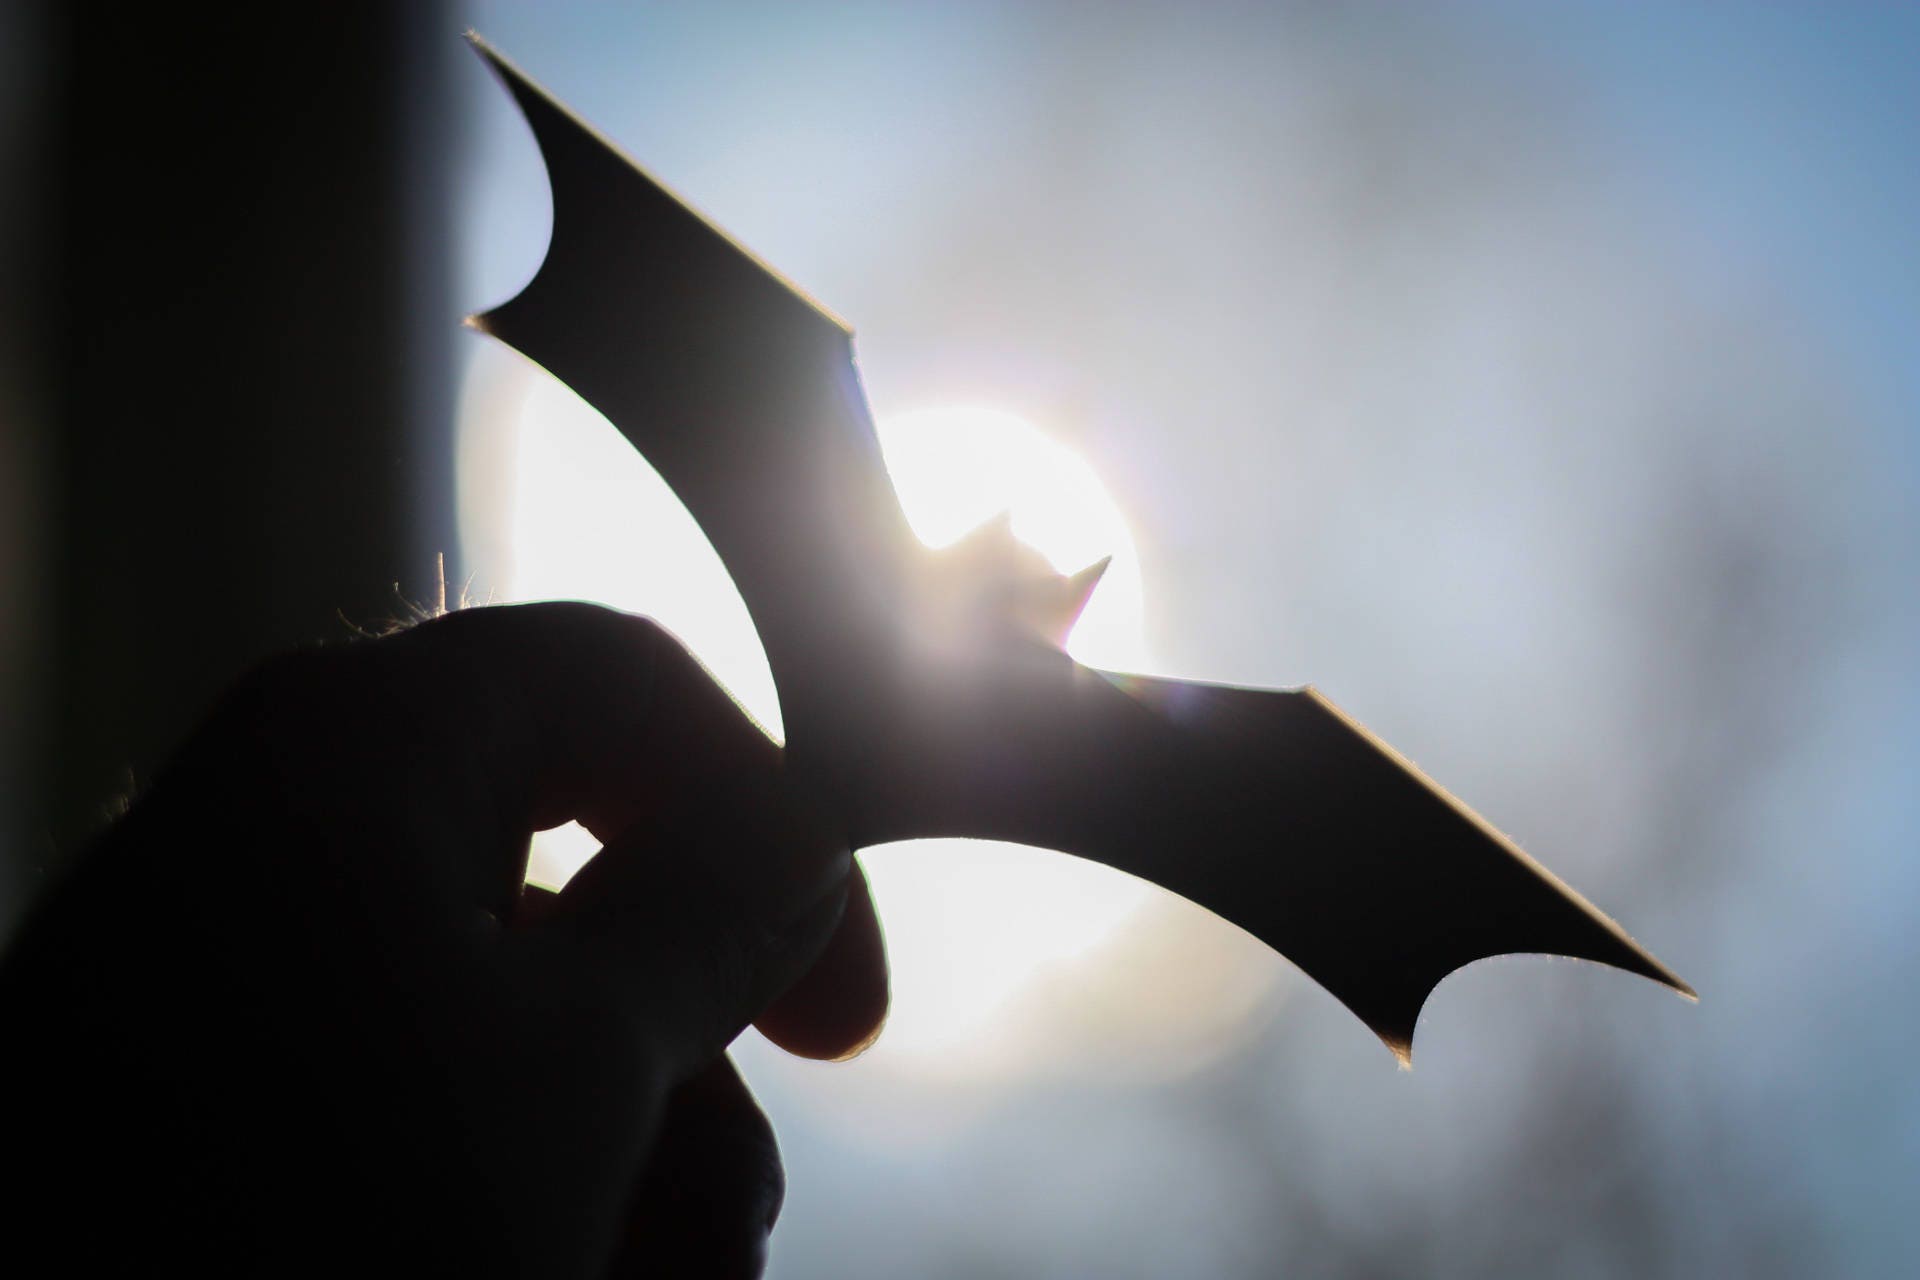 Dark Knight Rises Batarang | Batman Cosplay - 3DPrintProps